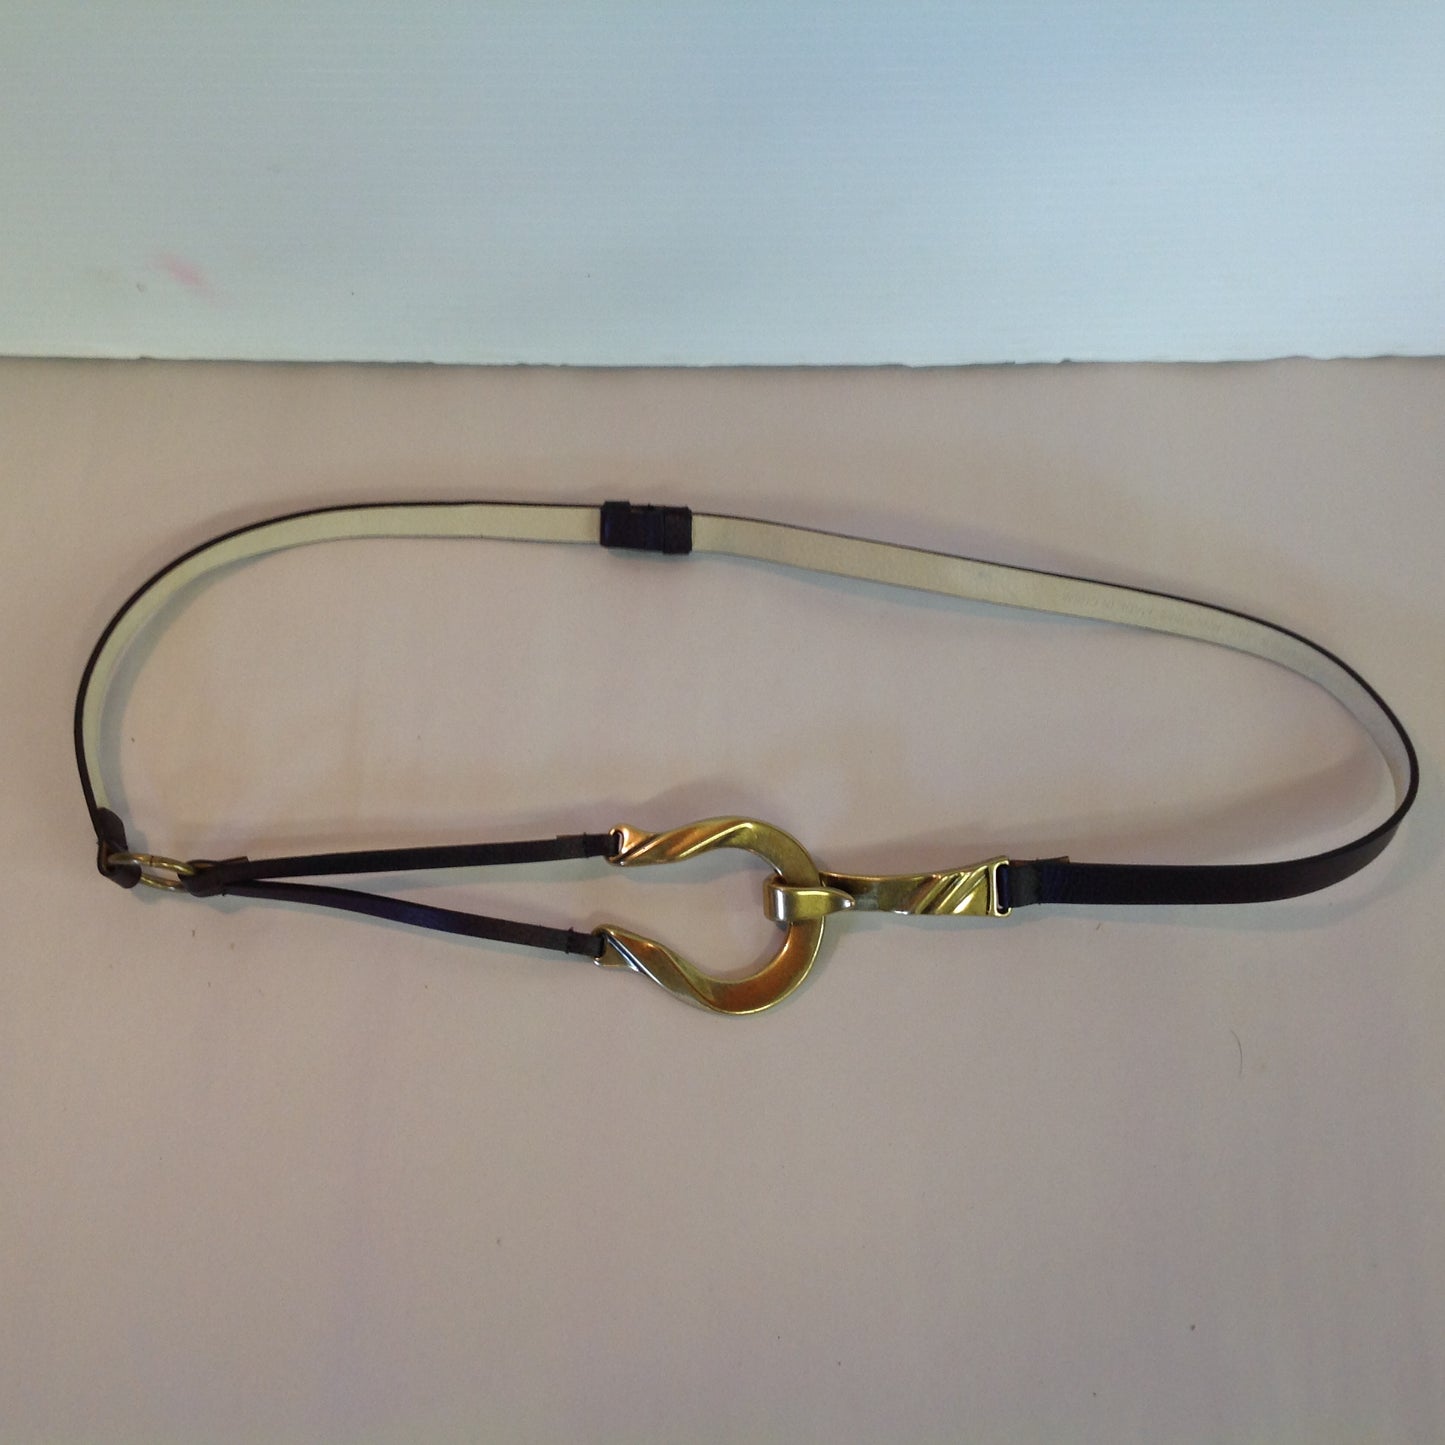 Vintage Dark Brown Chico's Leather Bridle Hoop Style Women's M/L Hook Hoop Closure Belt 22